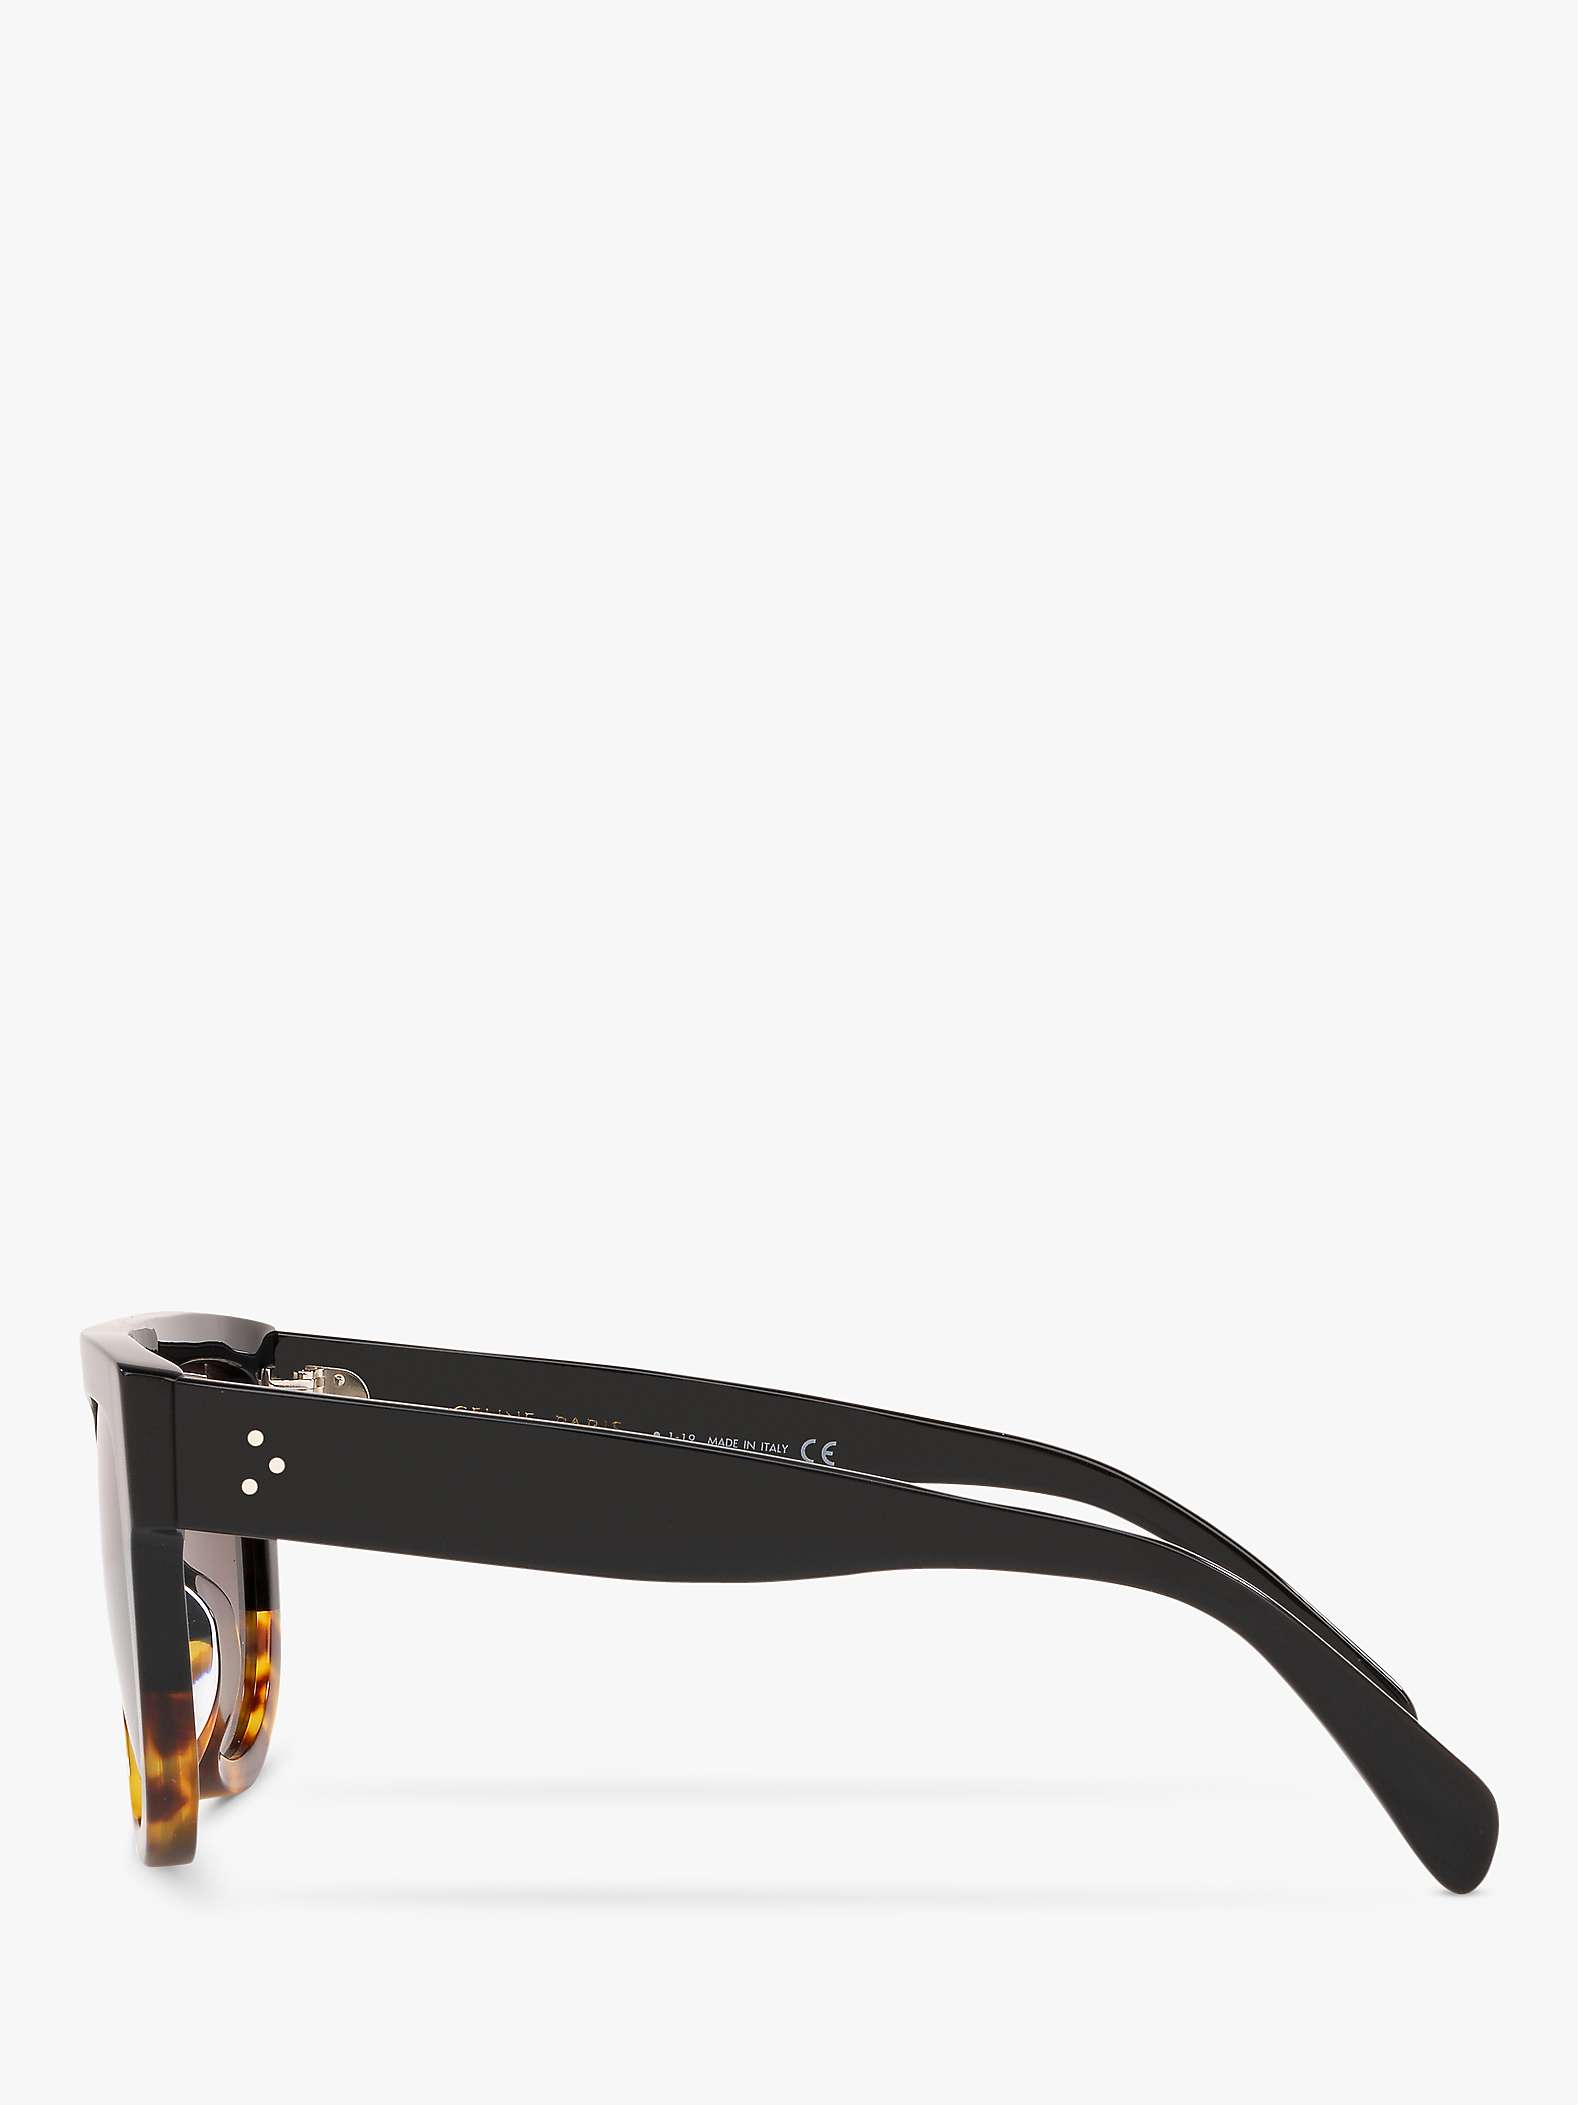 Buy Celine CL4001IN Women's Rectangular Sunglasses, Black Havana/Brown Gradient Online at johnlewis.com